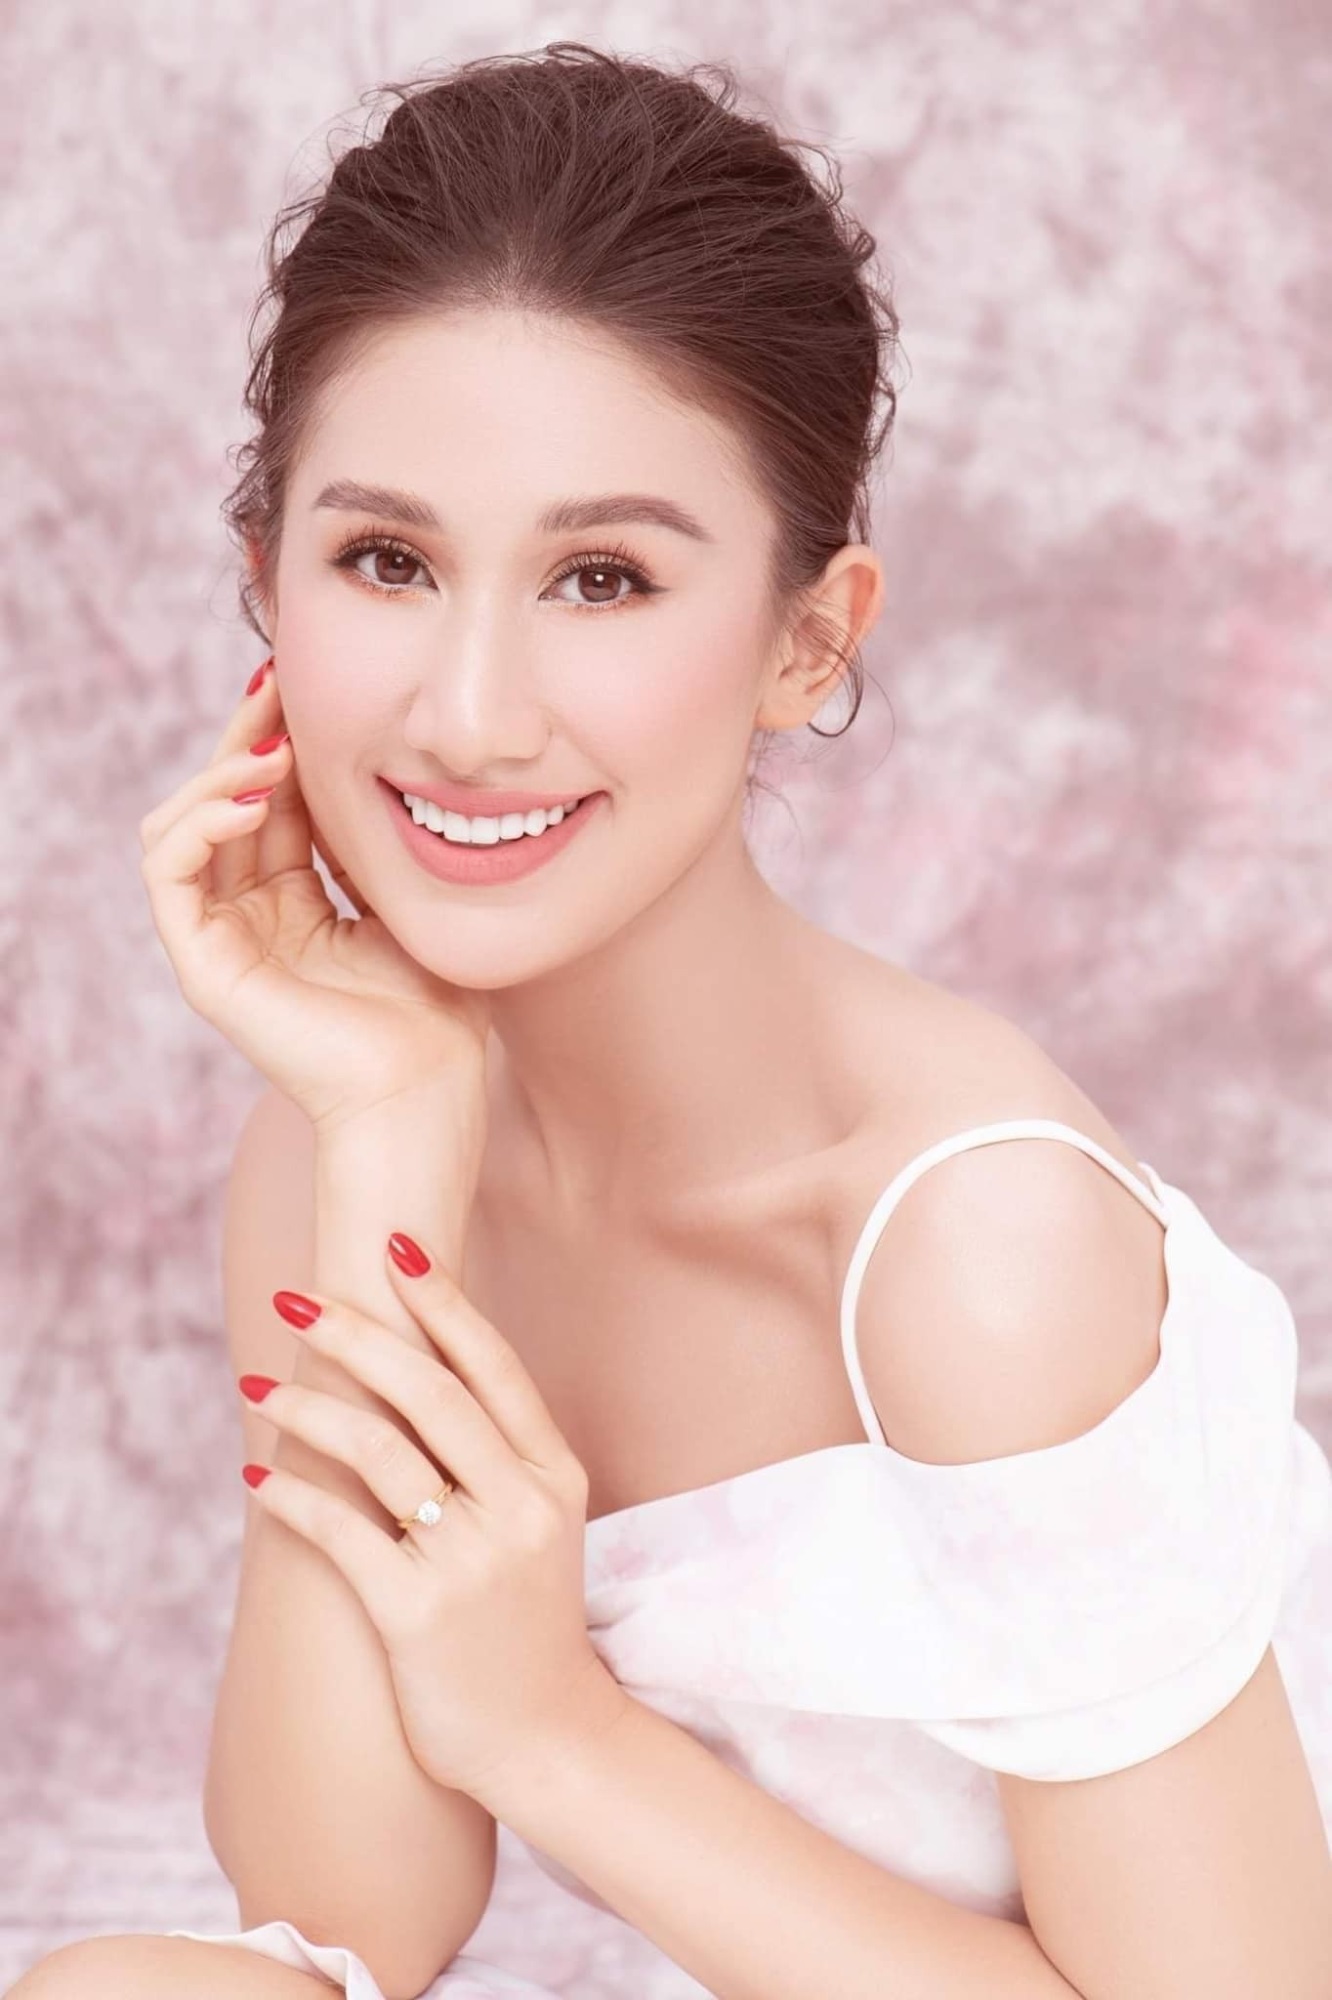 Dư luận bàng hoàng, xót xa trước thông tin 'bông hồng lai' của Hoa hậu Hoàn vũ Việt Nam 2019 đột ngột qua đời ở tuổi 26 - Ảnh 2